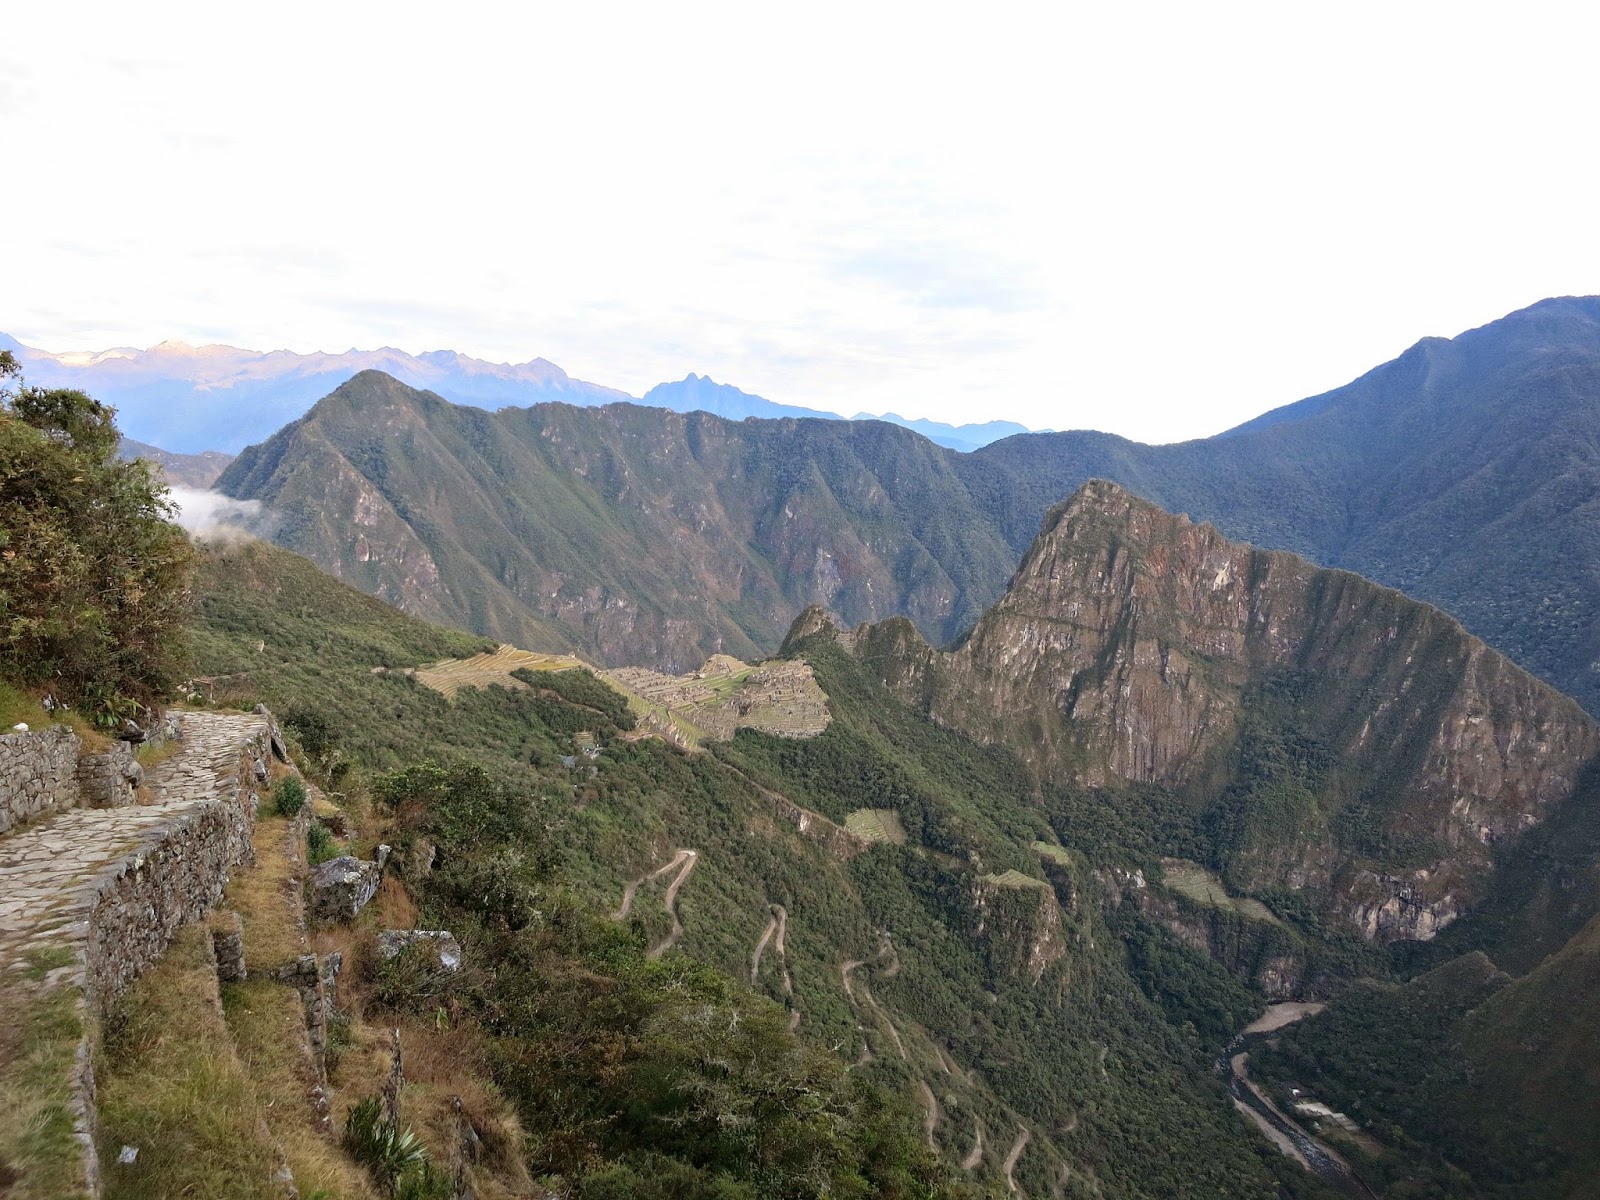 View of Machu Picchu from Inti Punku, Peru July 2014